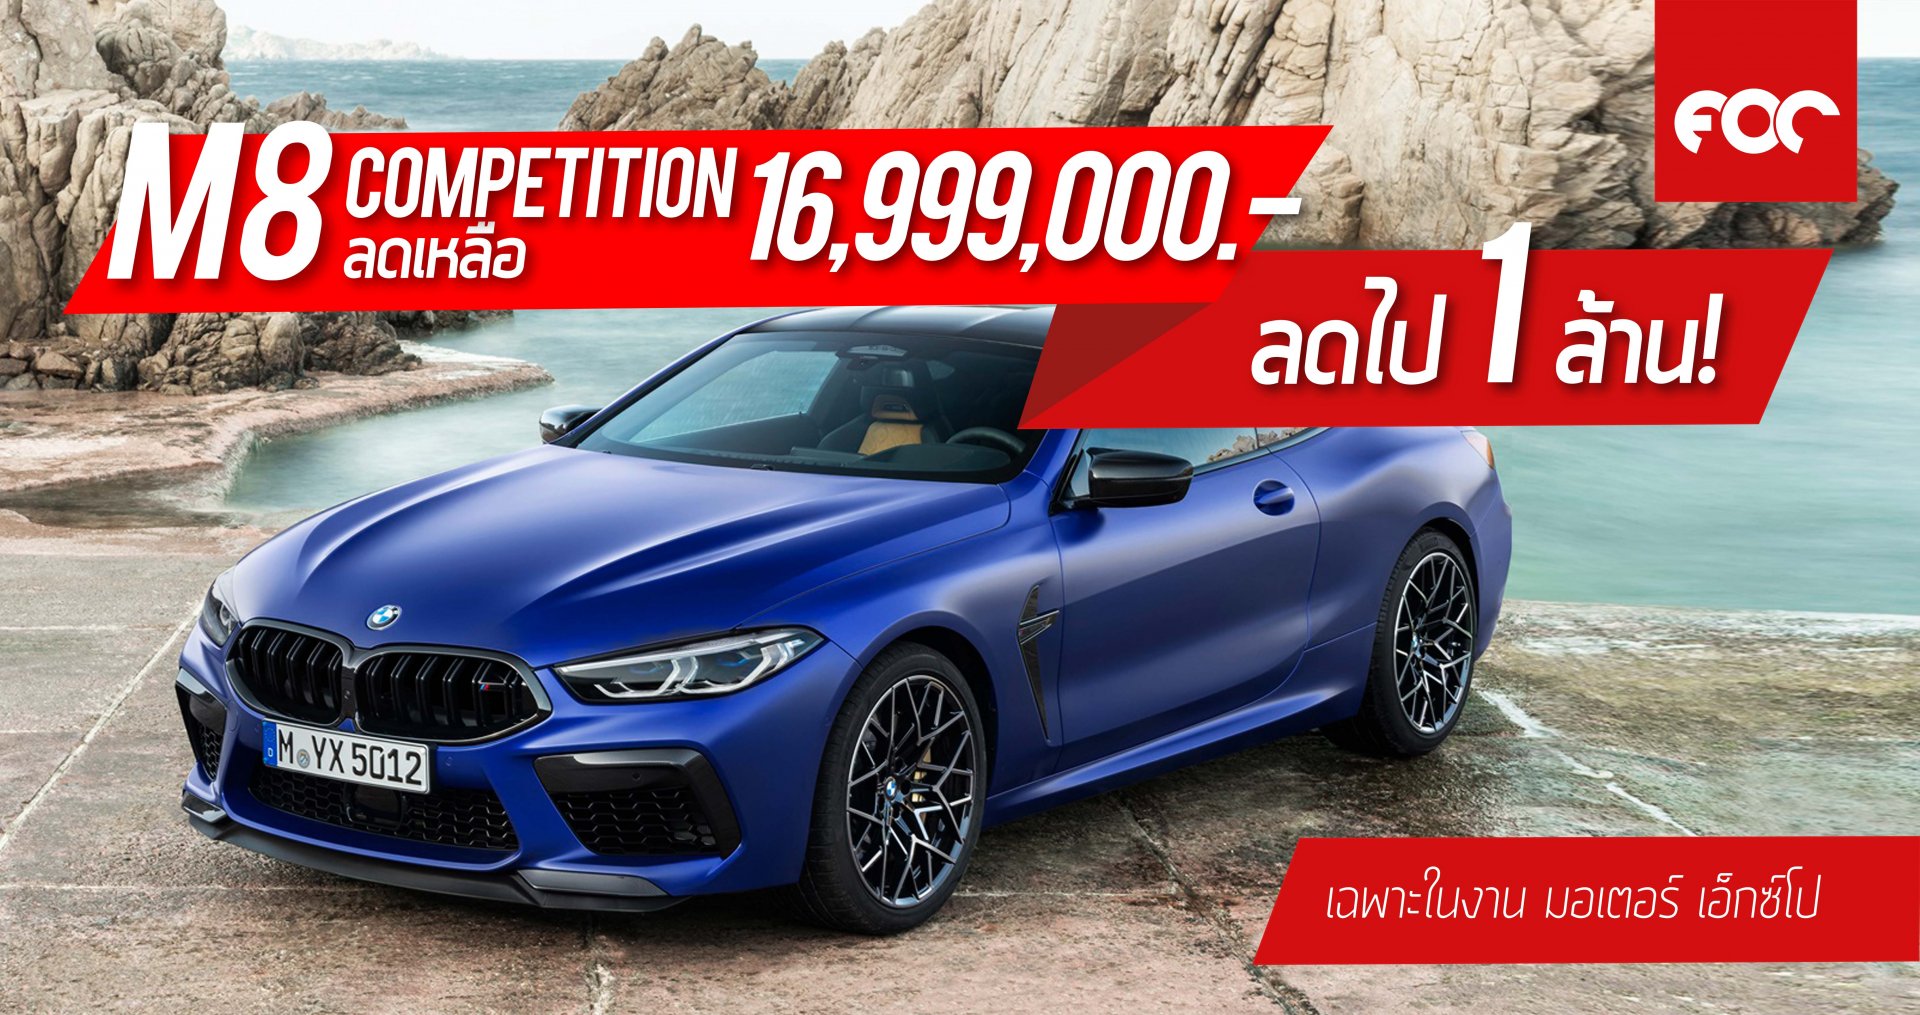 ลด 1 ล้านบาท! บีเอ็มดับเบิลยู M8 Competition Coupe  ราคาจำหน่ายเหลือ 16,999,000 บาท !